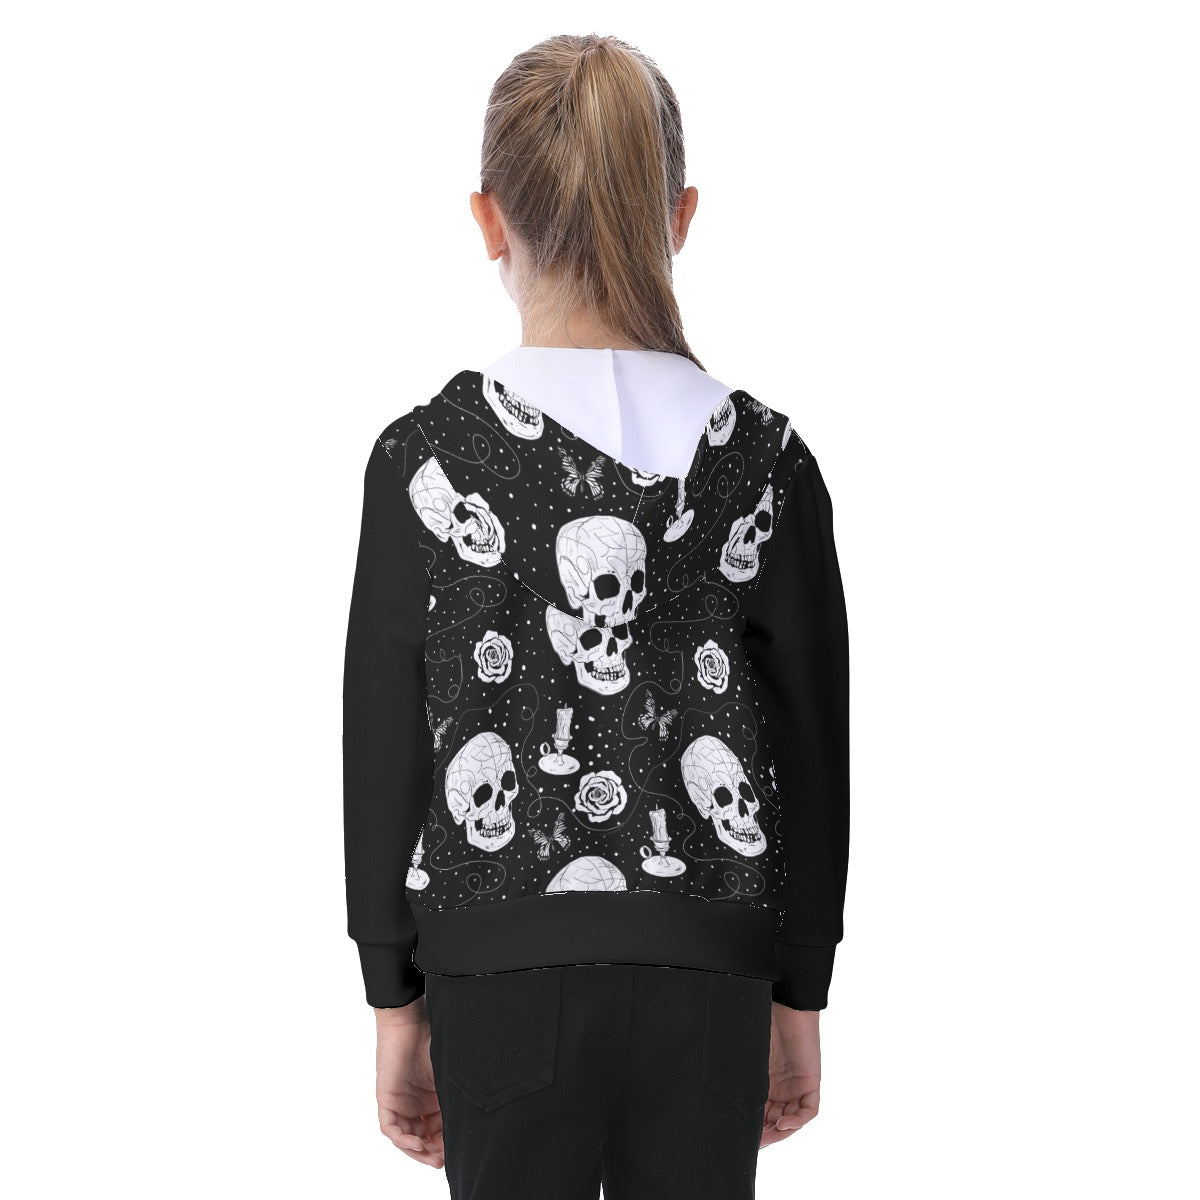 Skulls & Roses kids zip up hoodie l